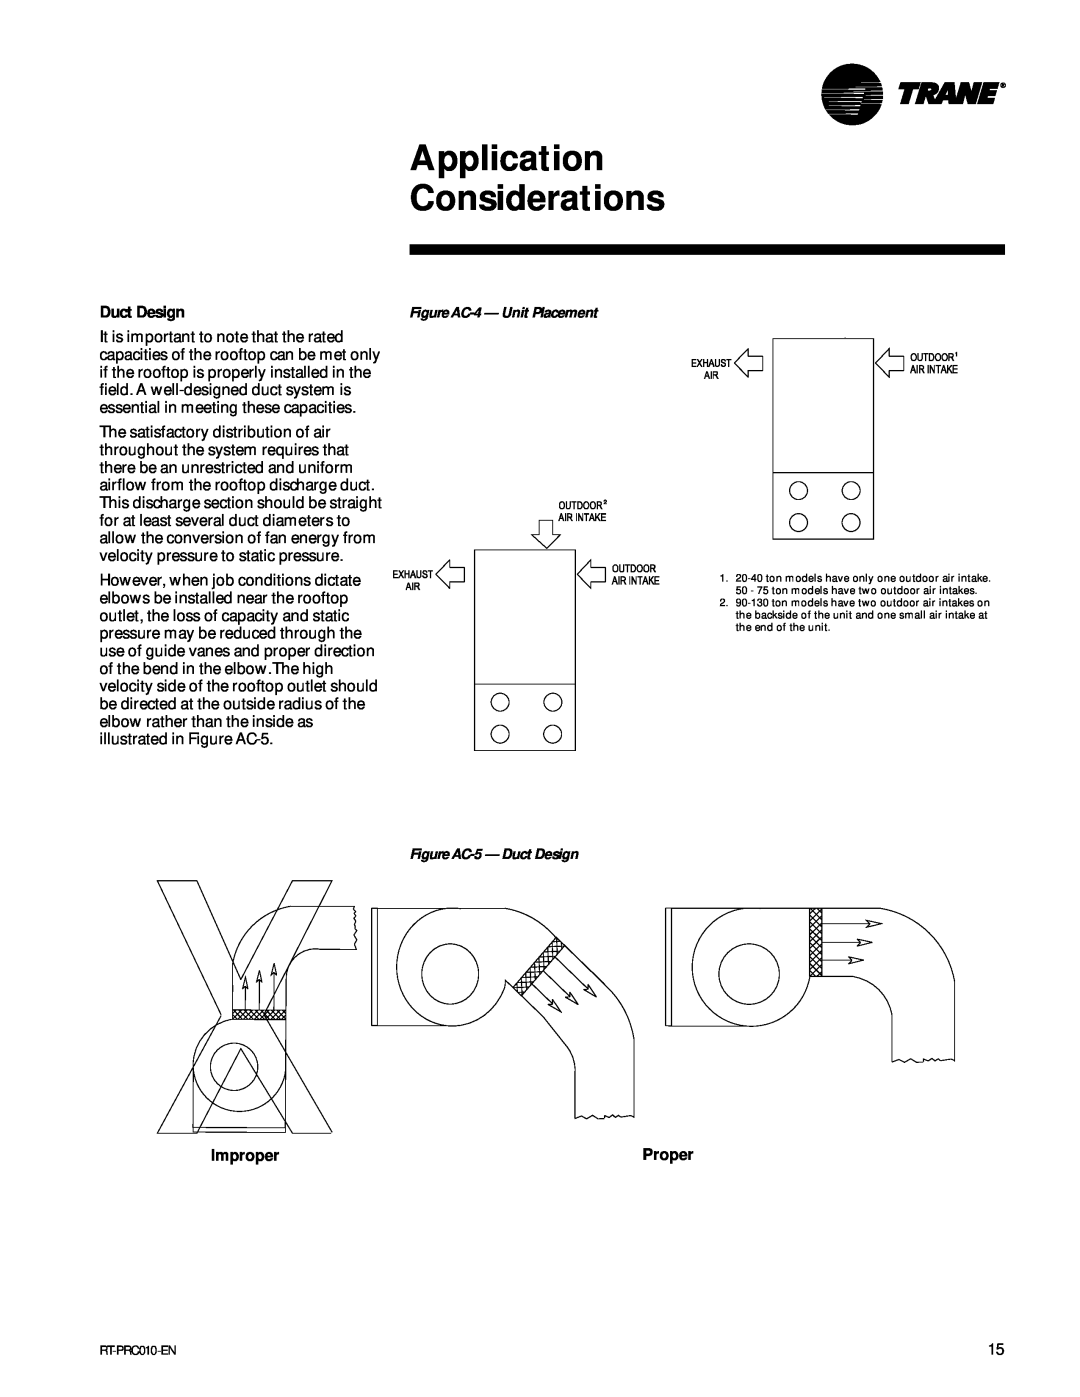 Trane RT-PRC010-EN manual Application Considerations, Duct Design, Improper, Proper 